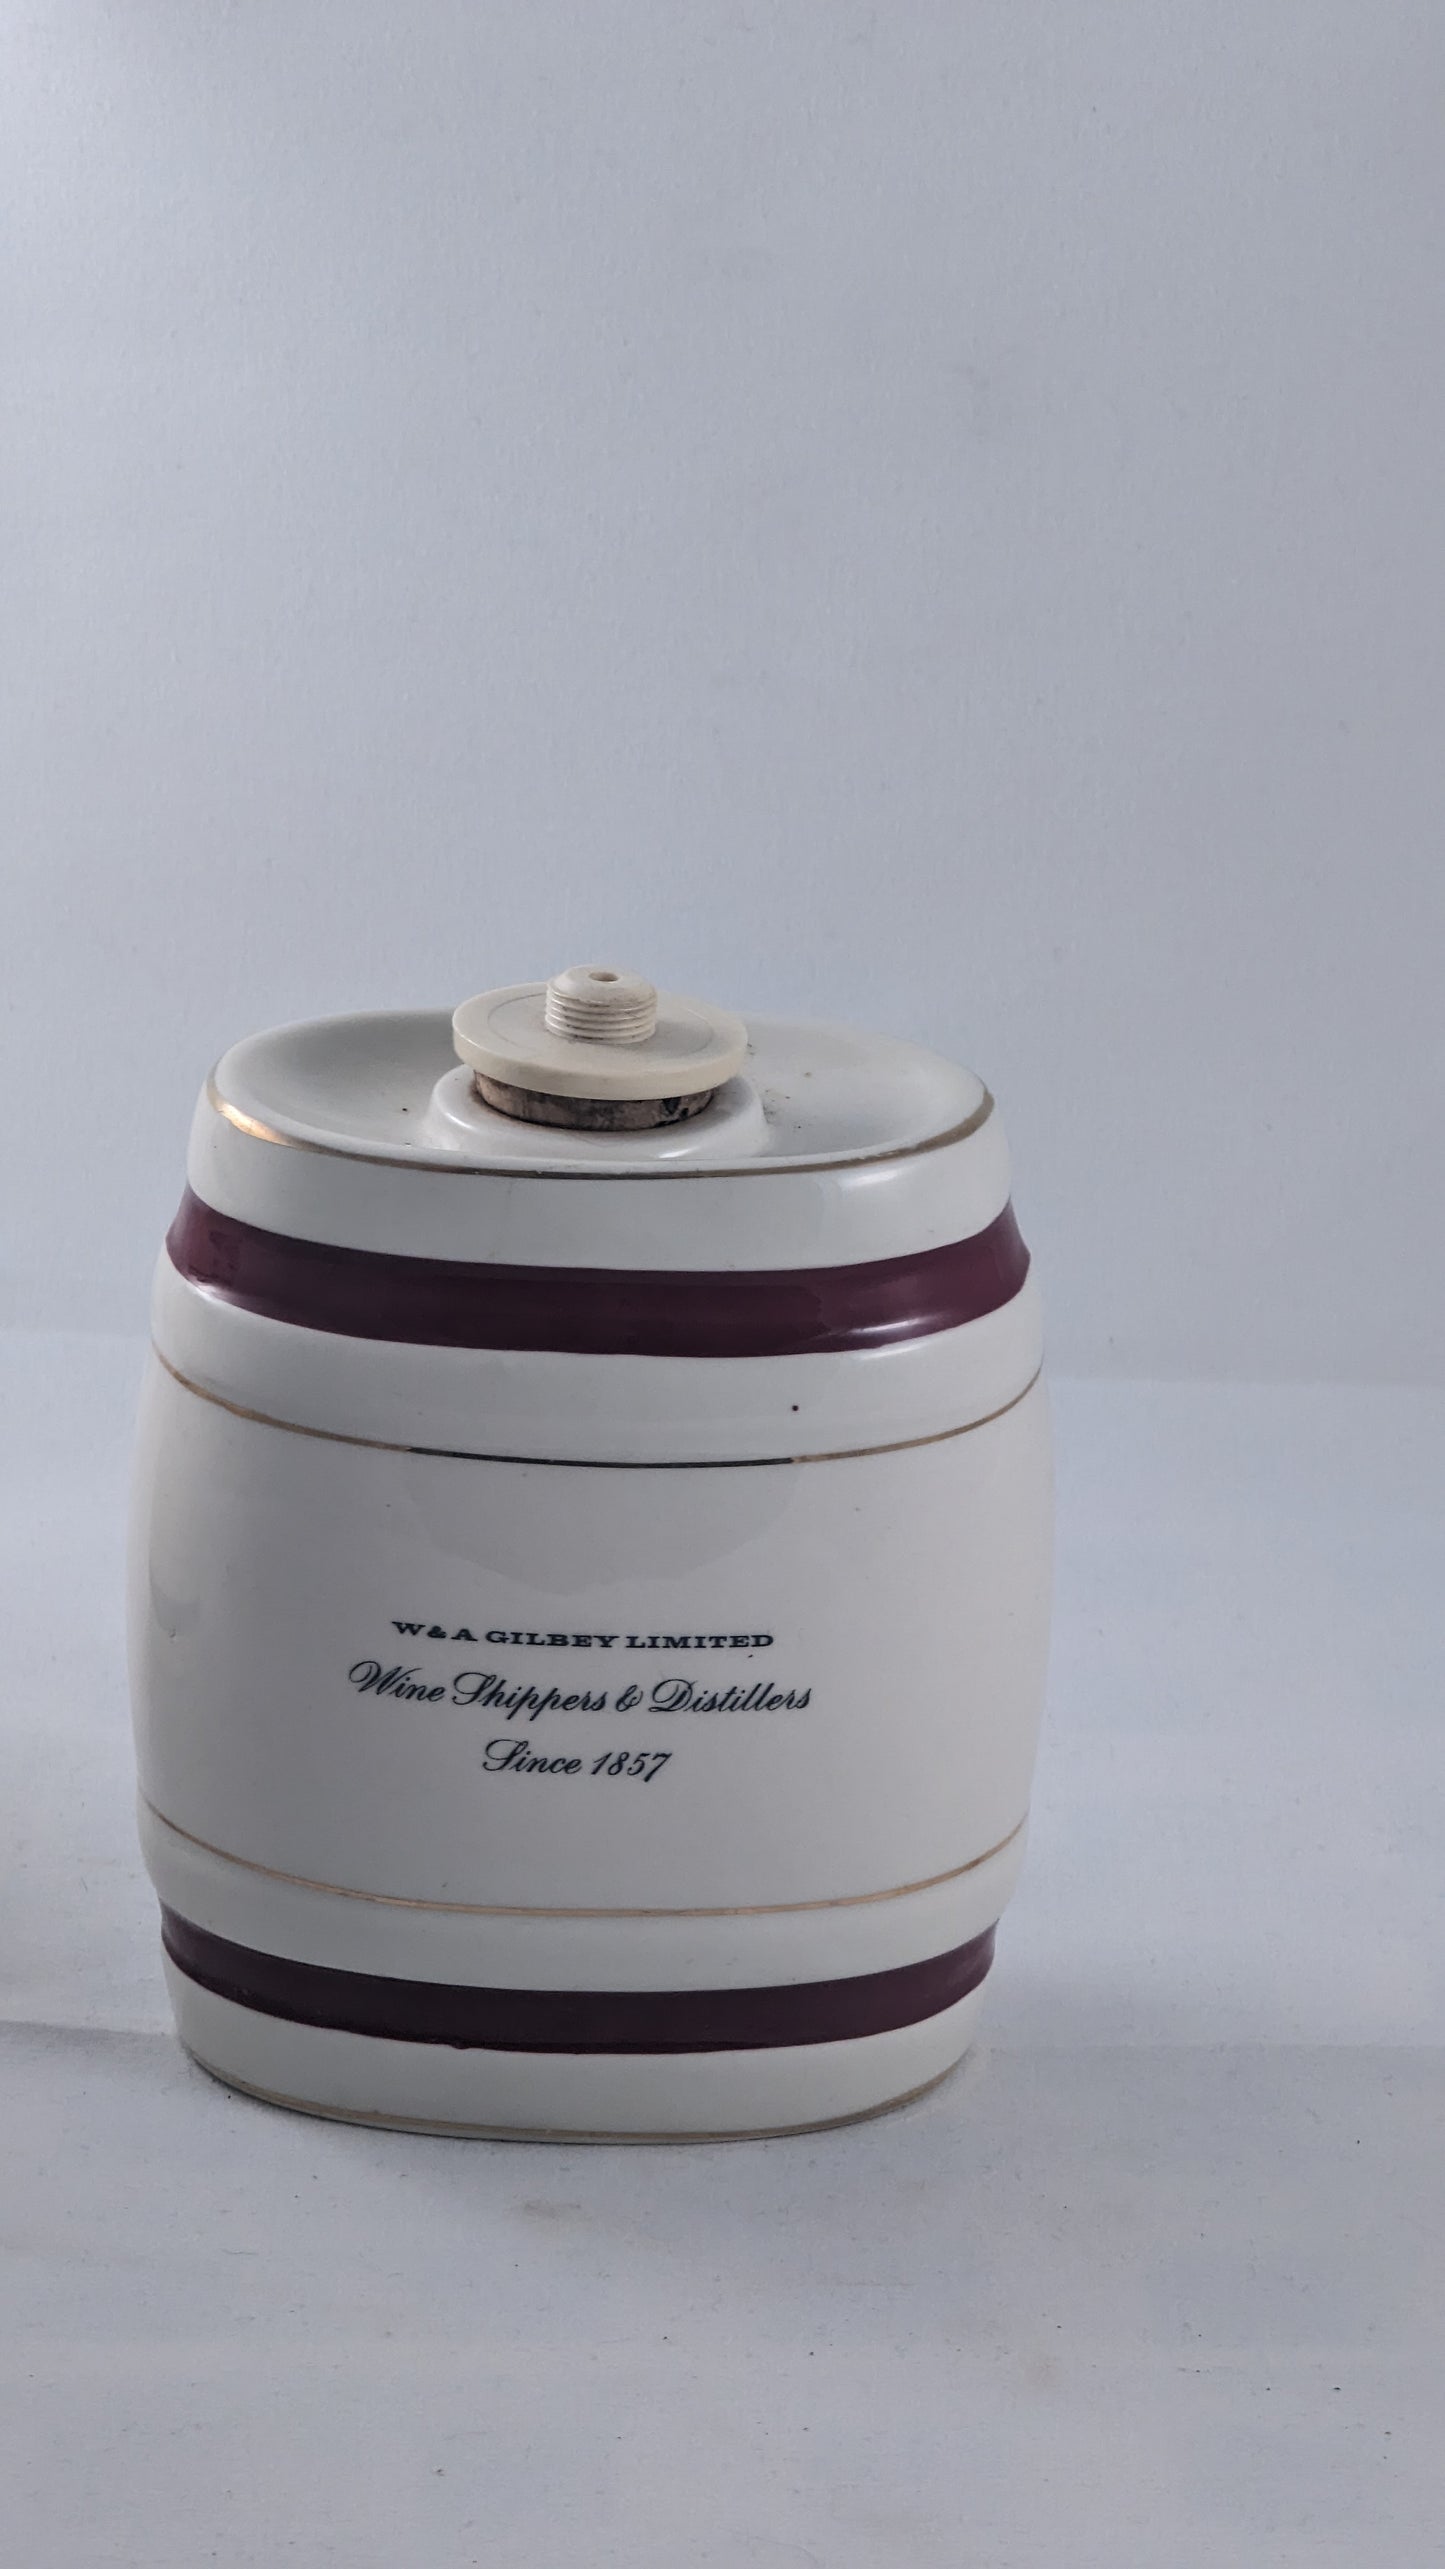 Vintage Wade Royal Victoria Ceramic Barrel Decanters x 4